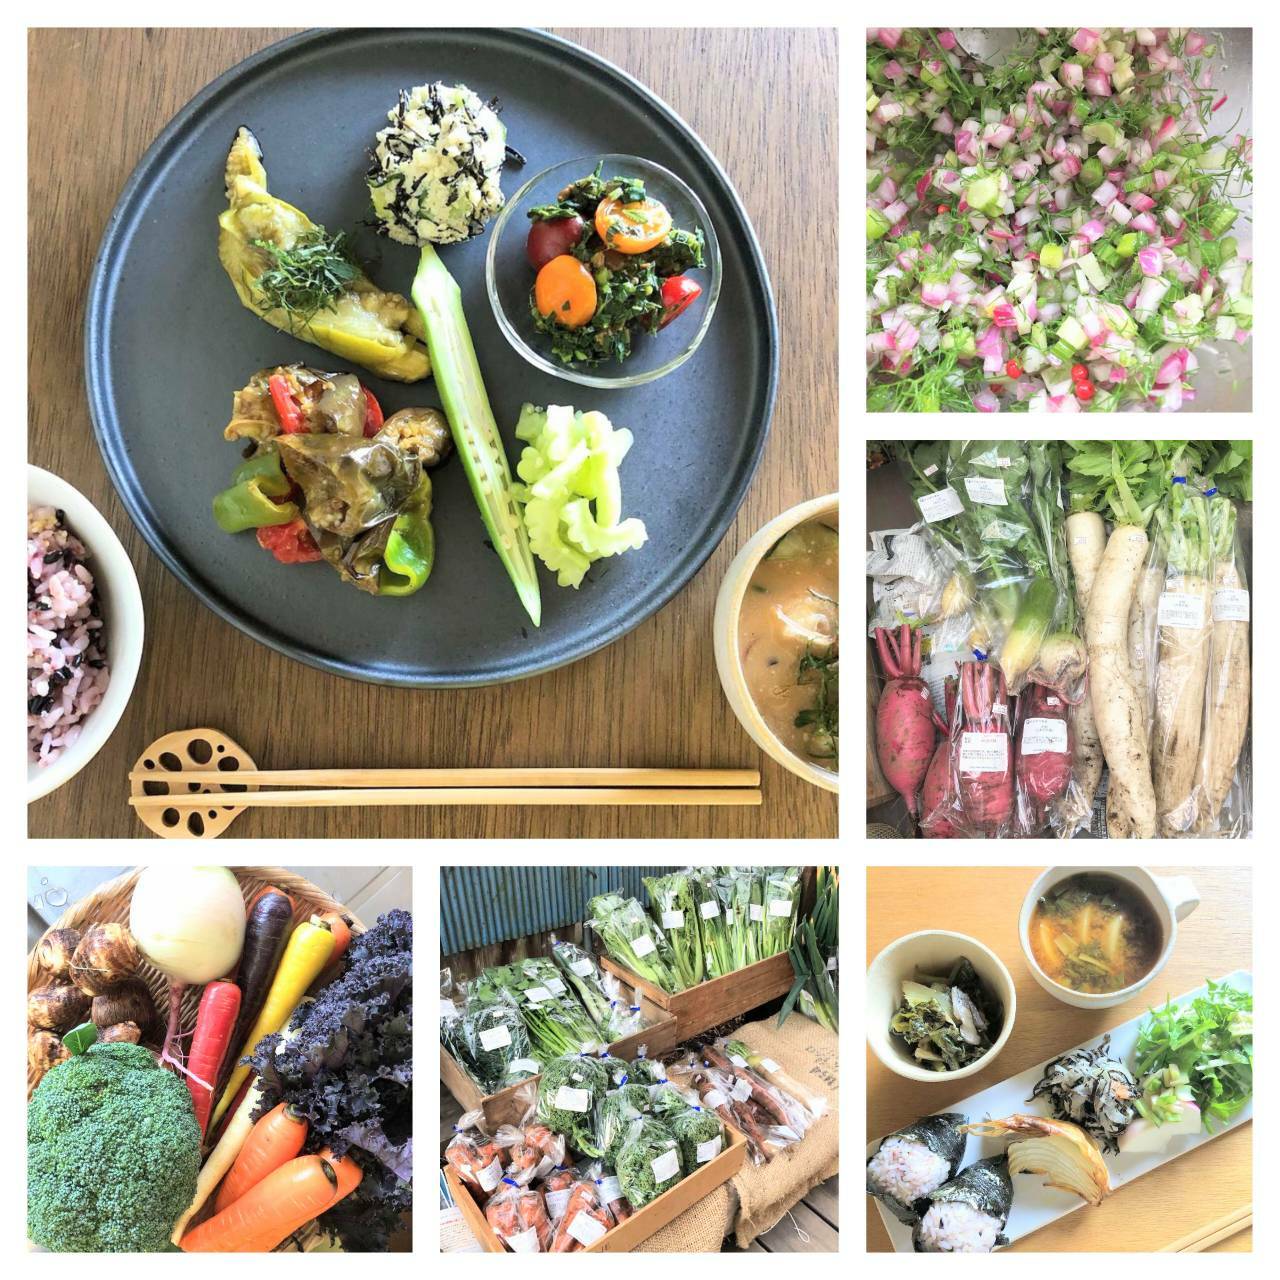 『柿右衛門農園』の野菜販売と「季節のお野菜ランチ」／『KAMOSU』の公式Instagramより